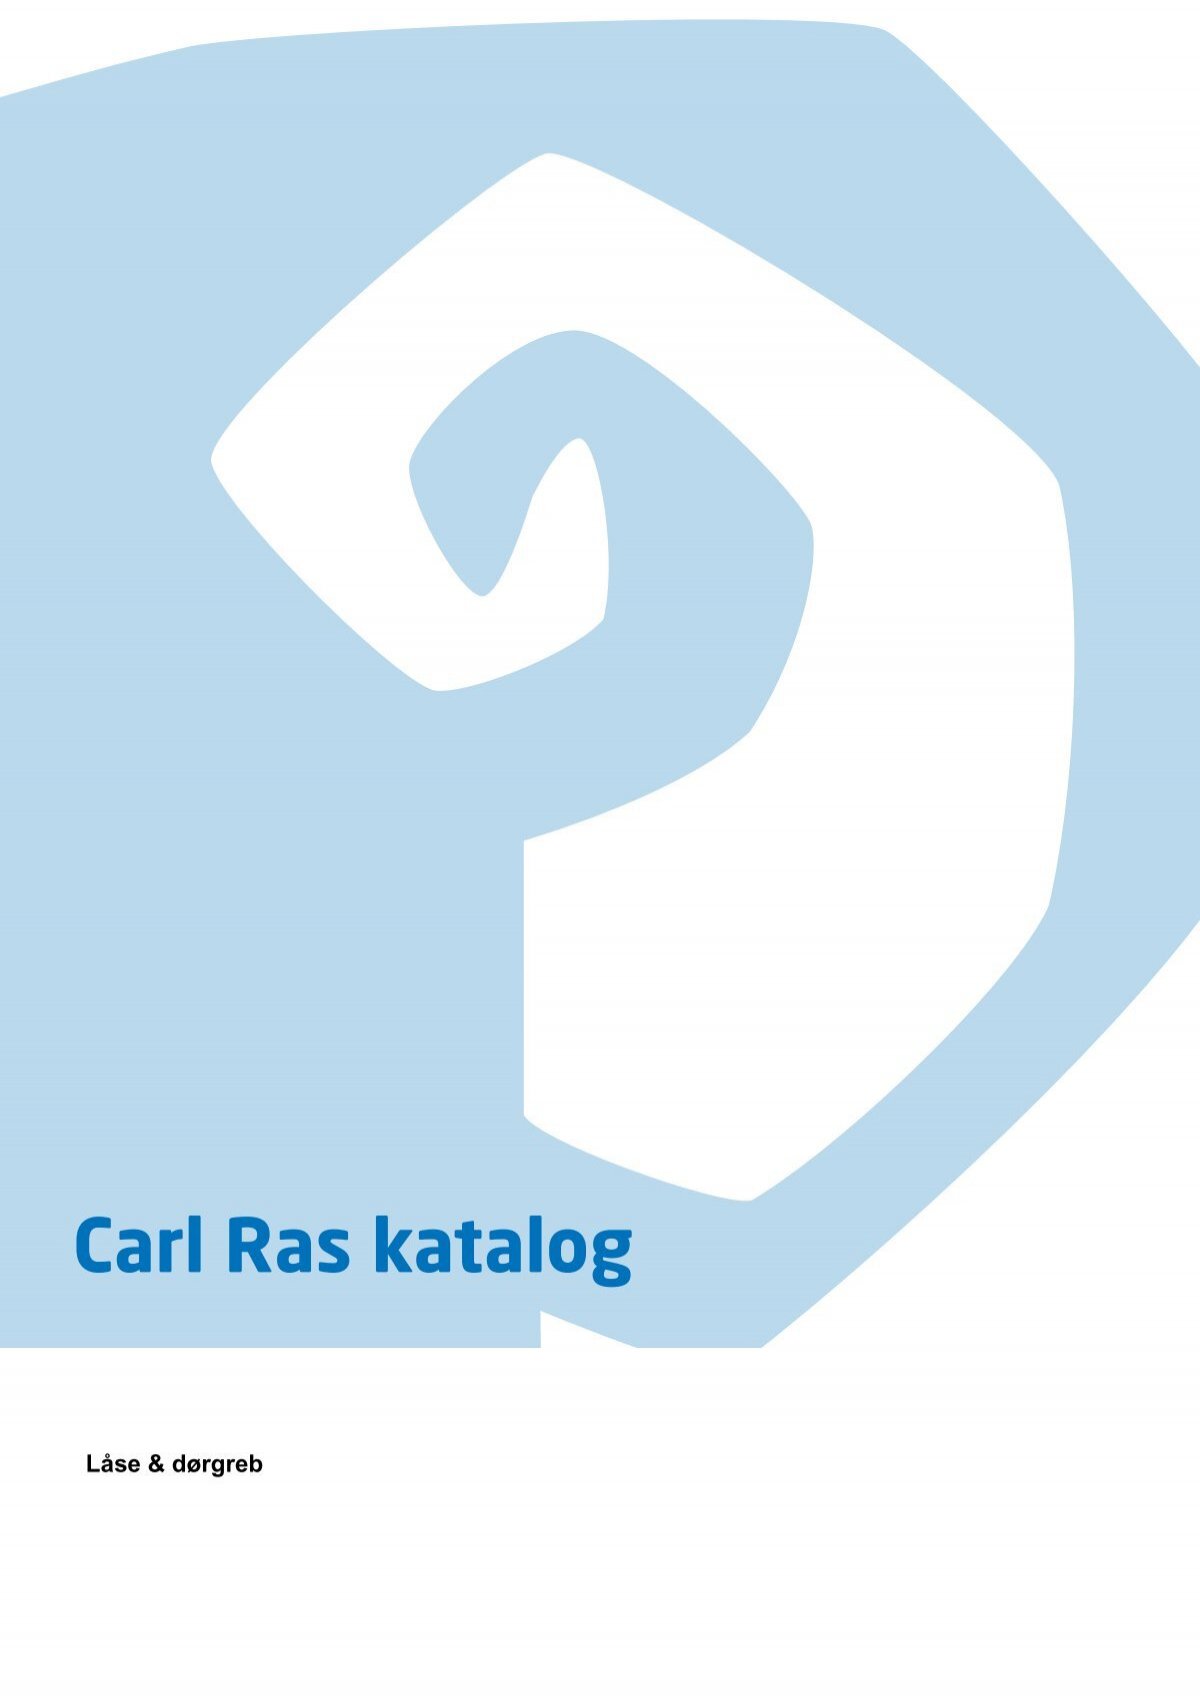 Velkommen til Carl Ras katalog - Carl Ras A/S